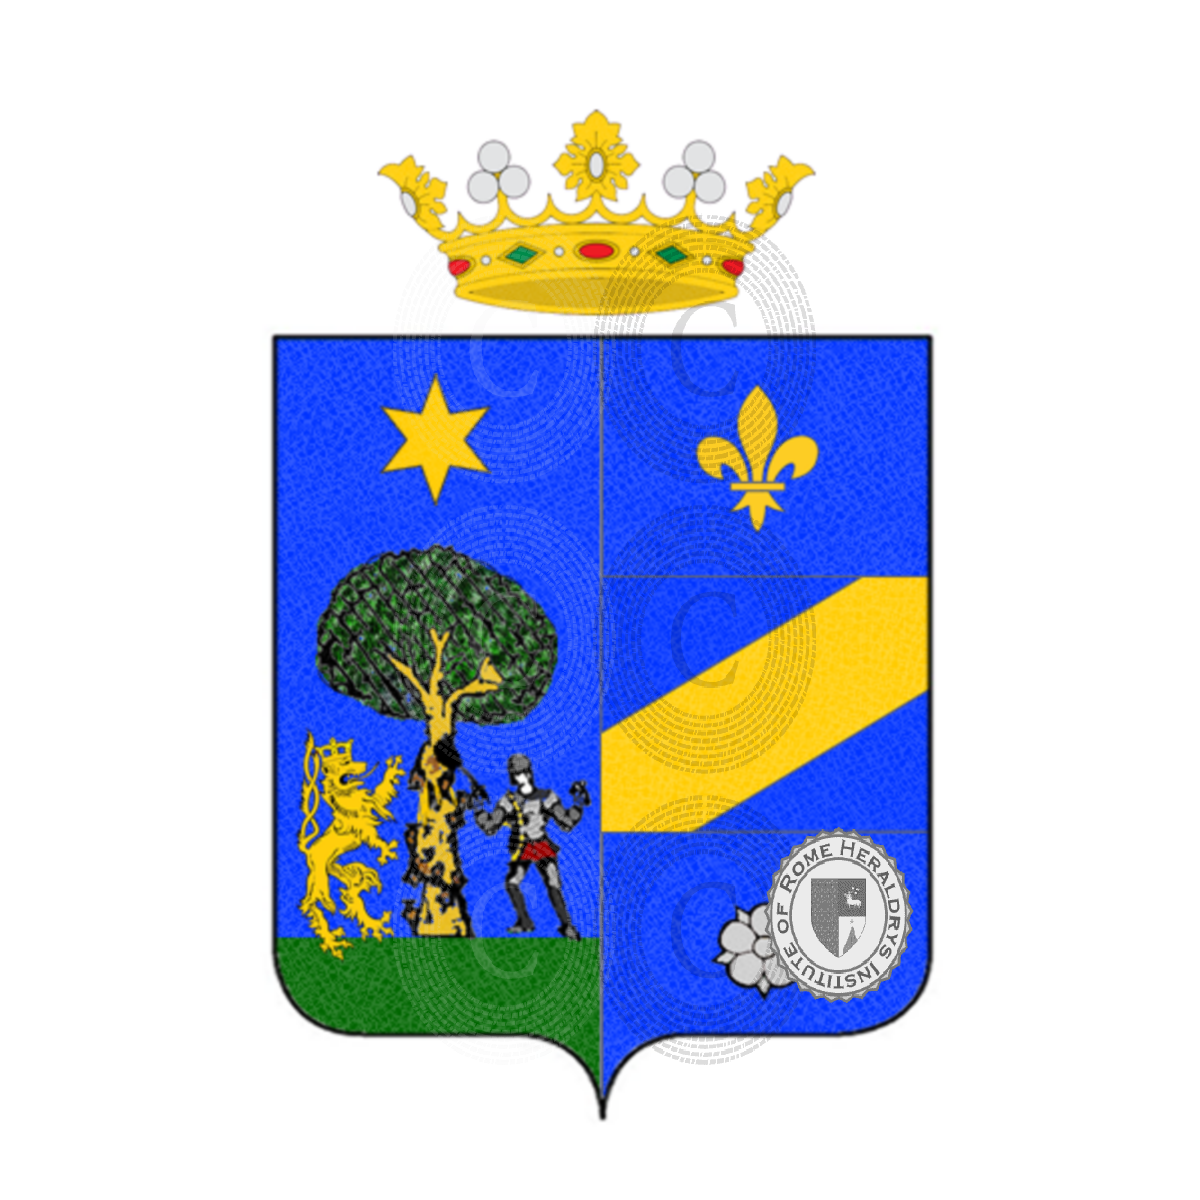 Wappen der Familiemazzeo giannone    